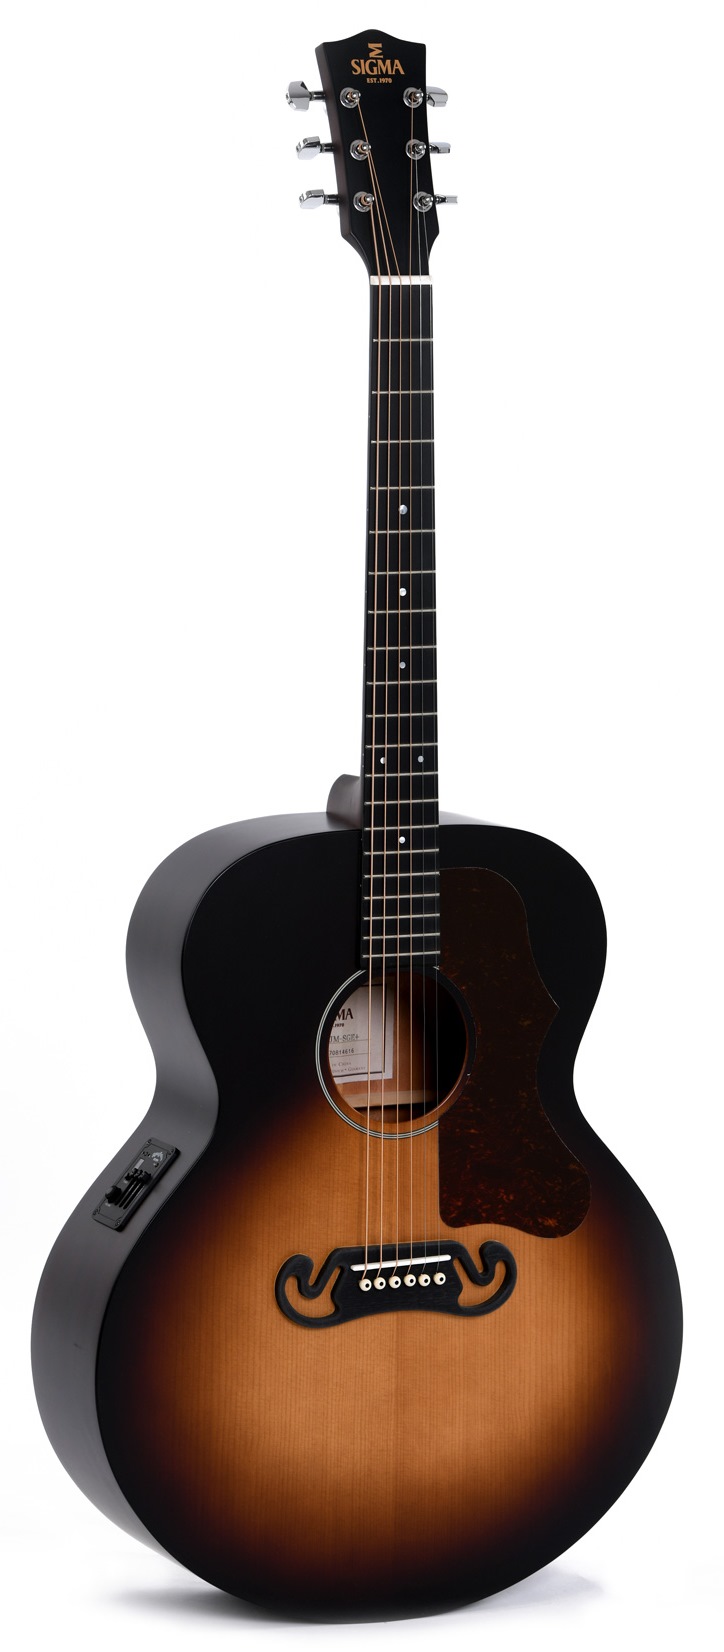 Электроакустические гитары Sigma GJM-SGE электрическая гитара разделяет металлическую перемычку через пластину втулки втулки кузова для замены гитары